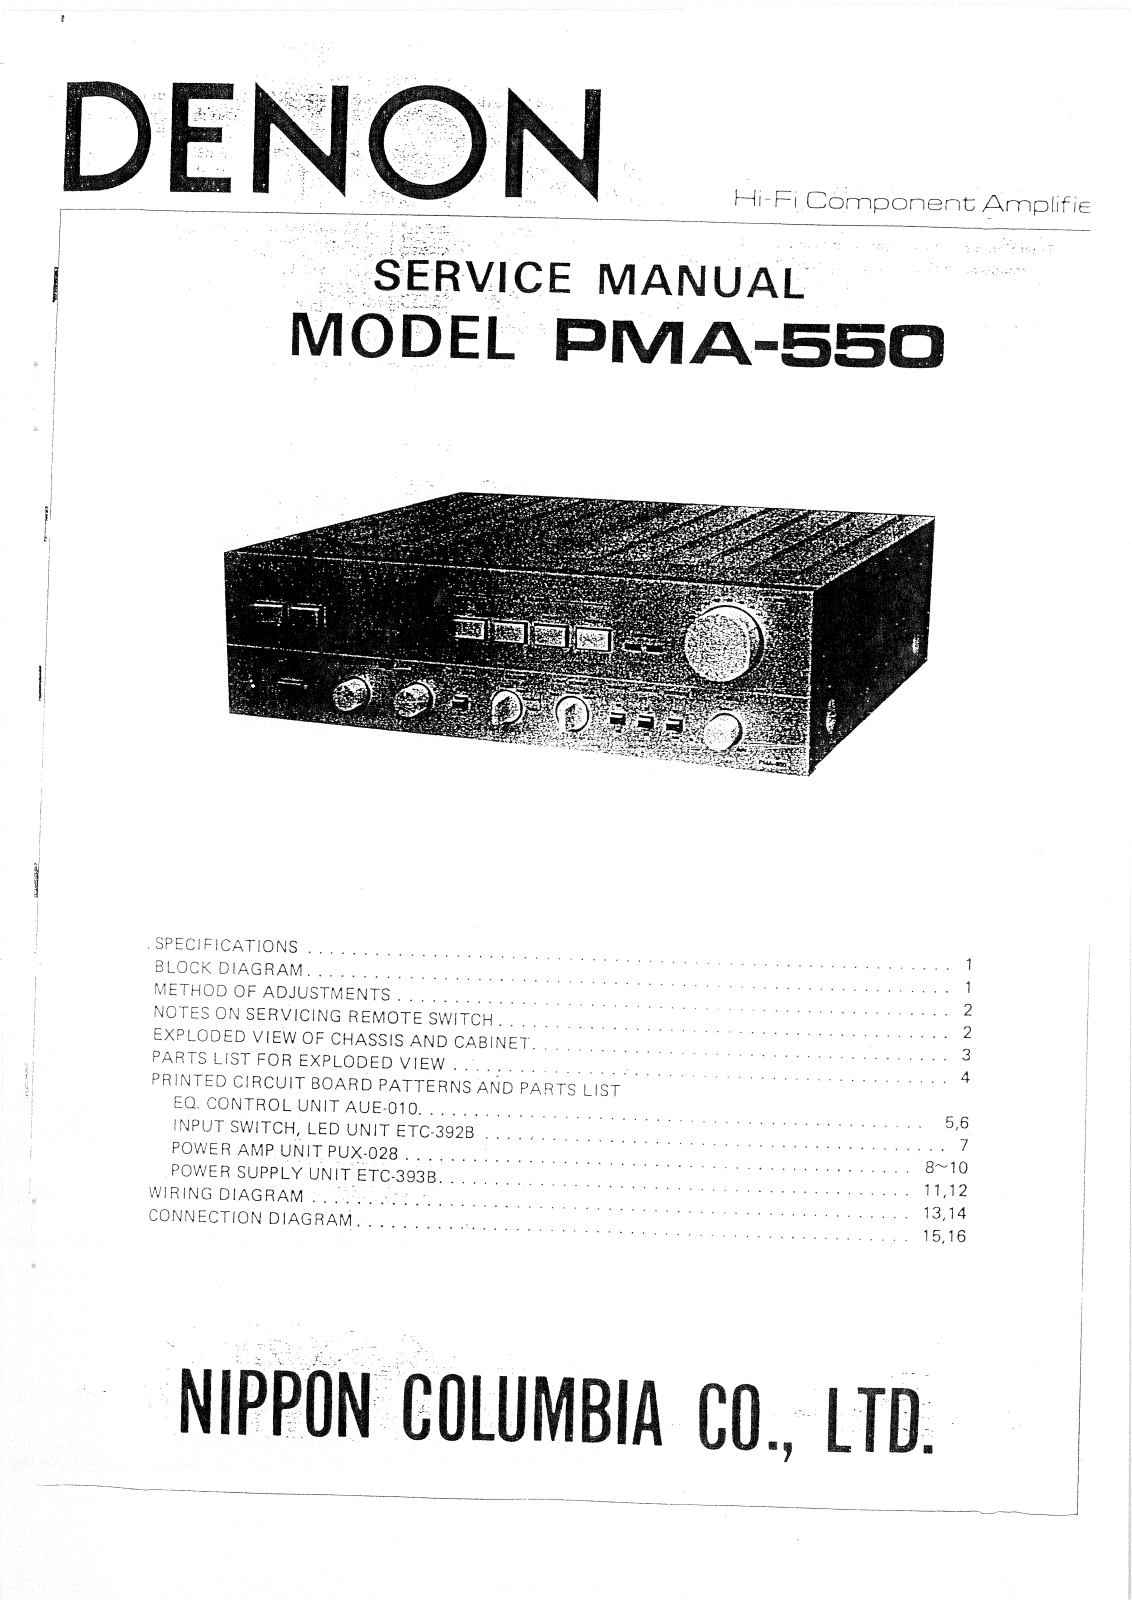 Denon PMA-550 Service Manual